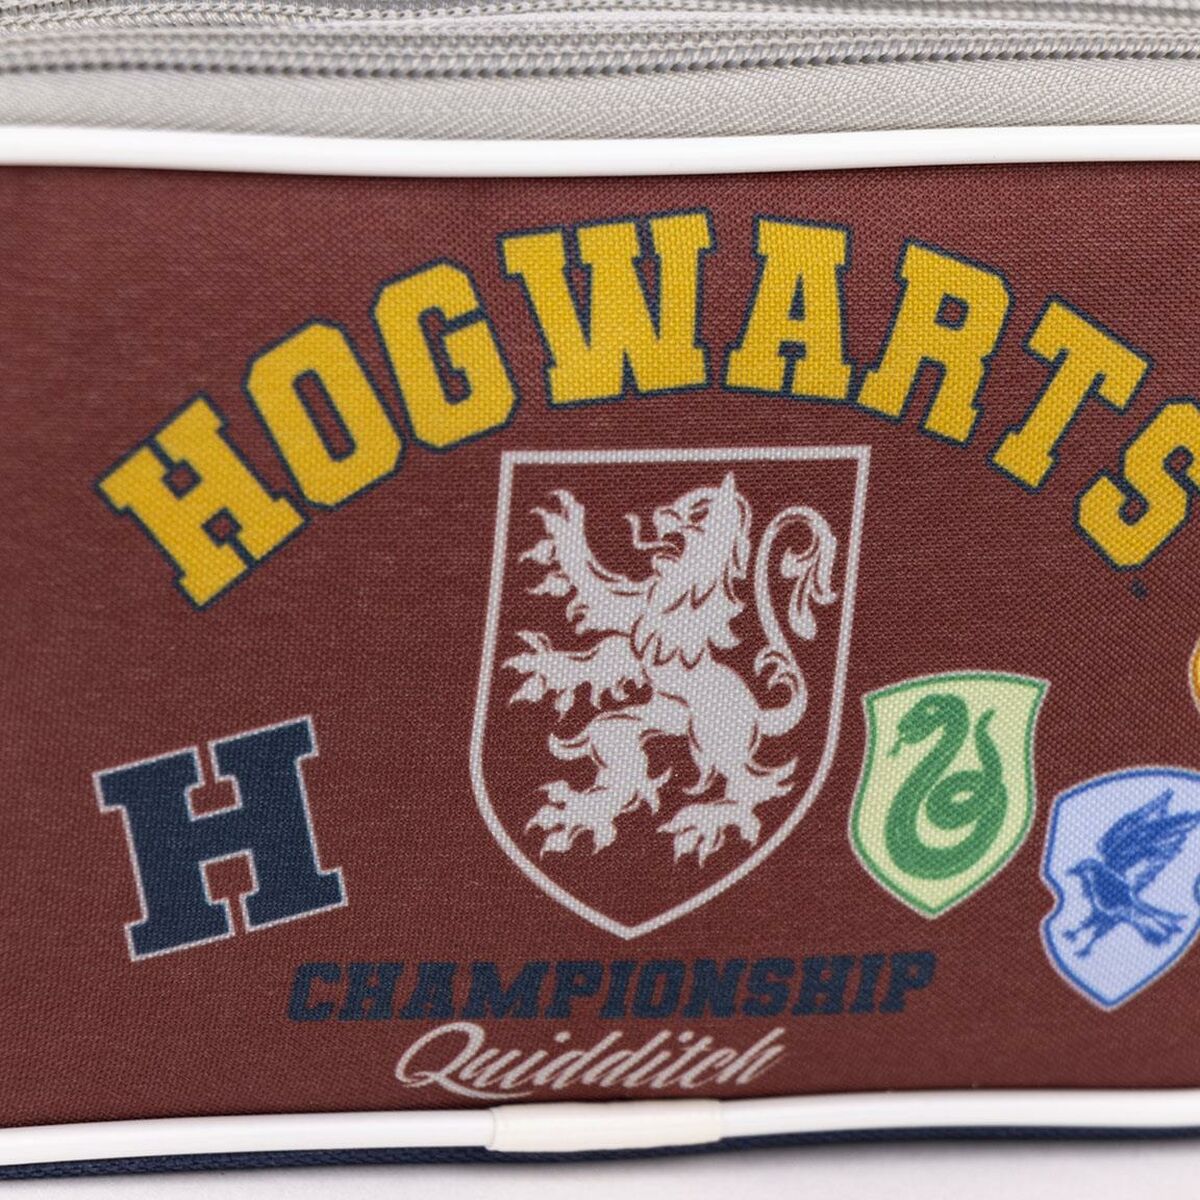 Dubbel bär-allt Harry Potter Howarts 22,5 x 8 x 10 cm Röd Mörkblå-Kontor och Kontorsmaterial, Skol- och utbildningsmaterial-Harry Potter-peaceofhome.se